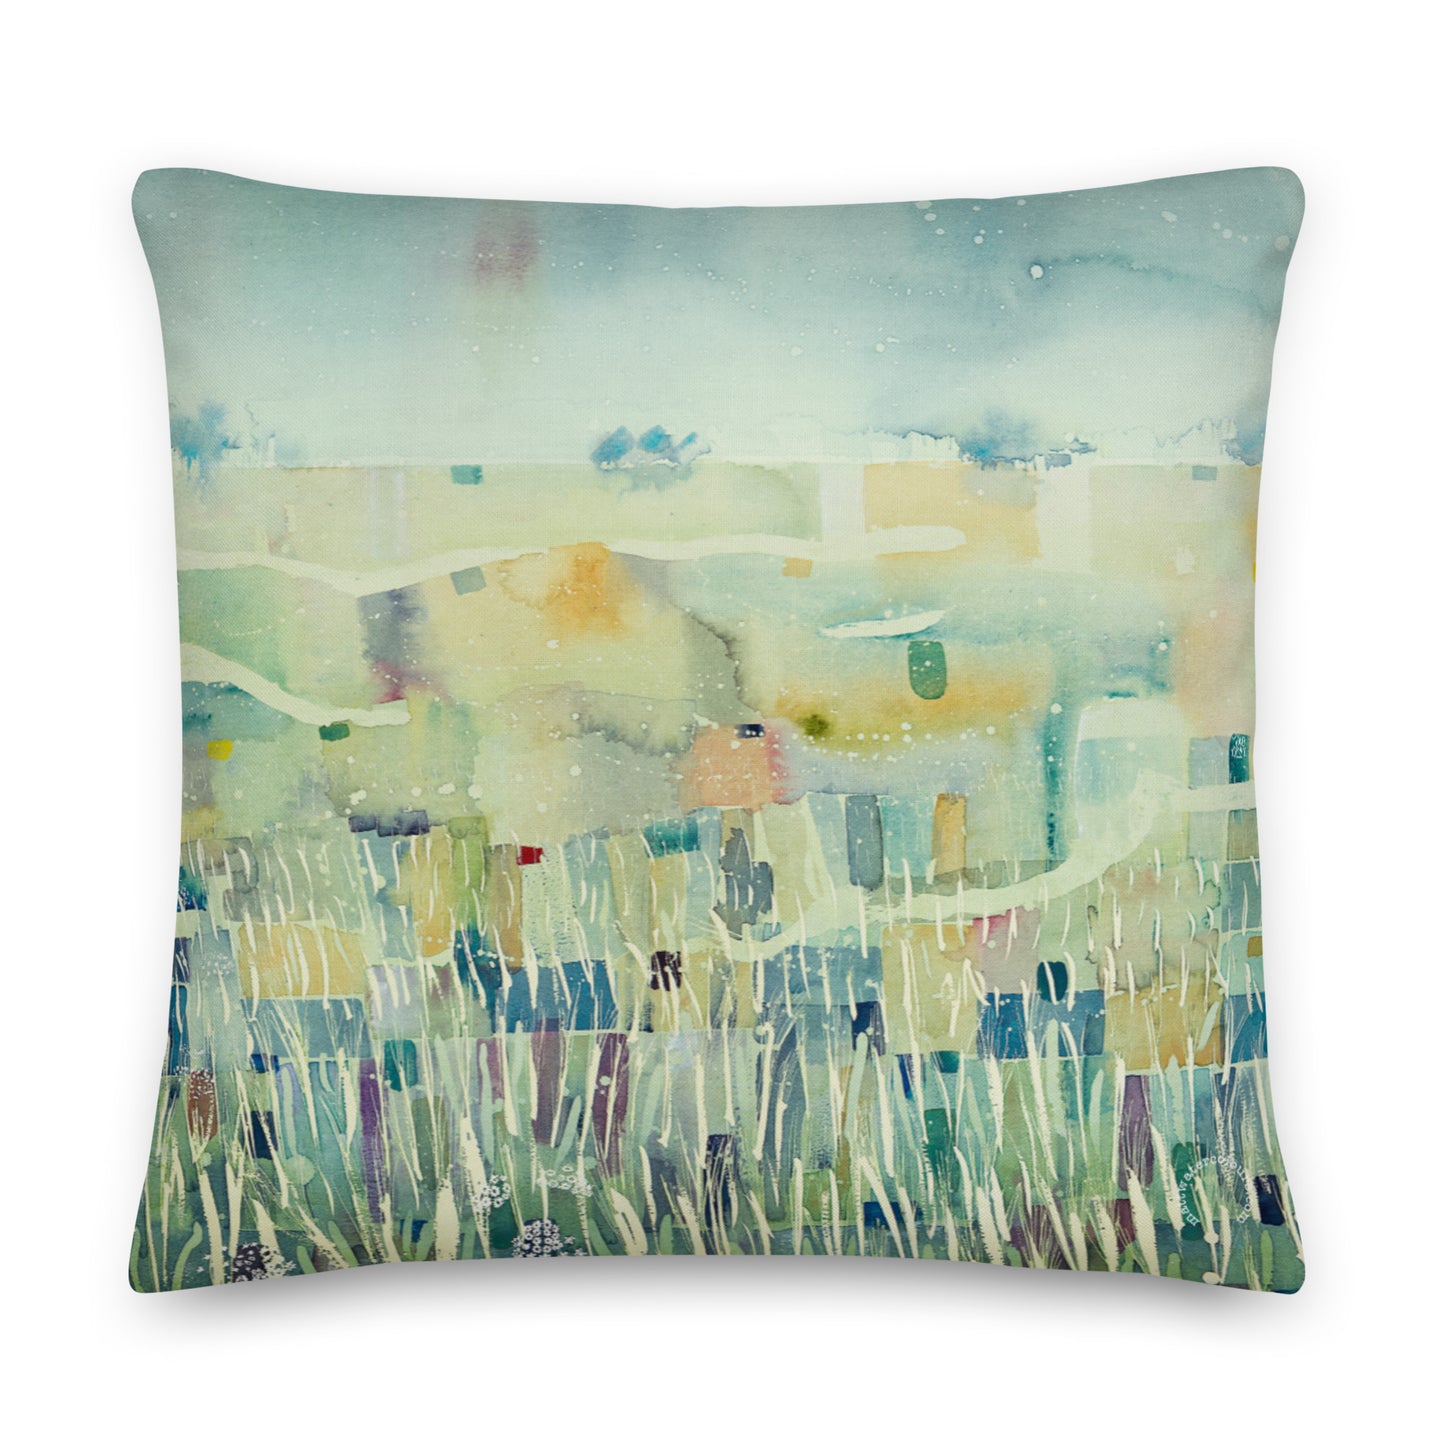 Large Luxury Art Print Cushion - Poppy in a Barley Field (56cm x 56cm)